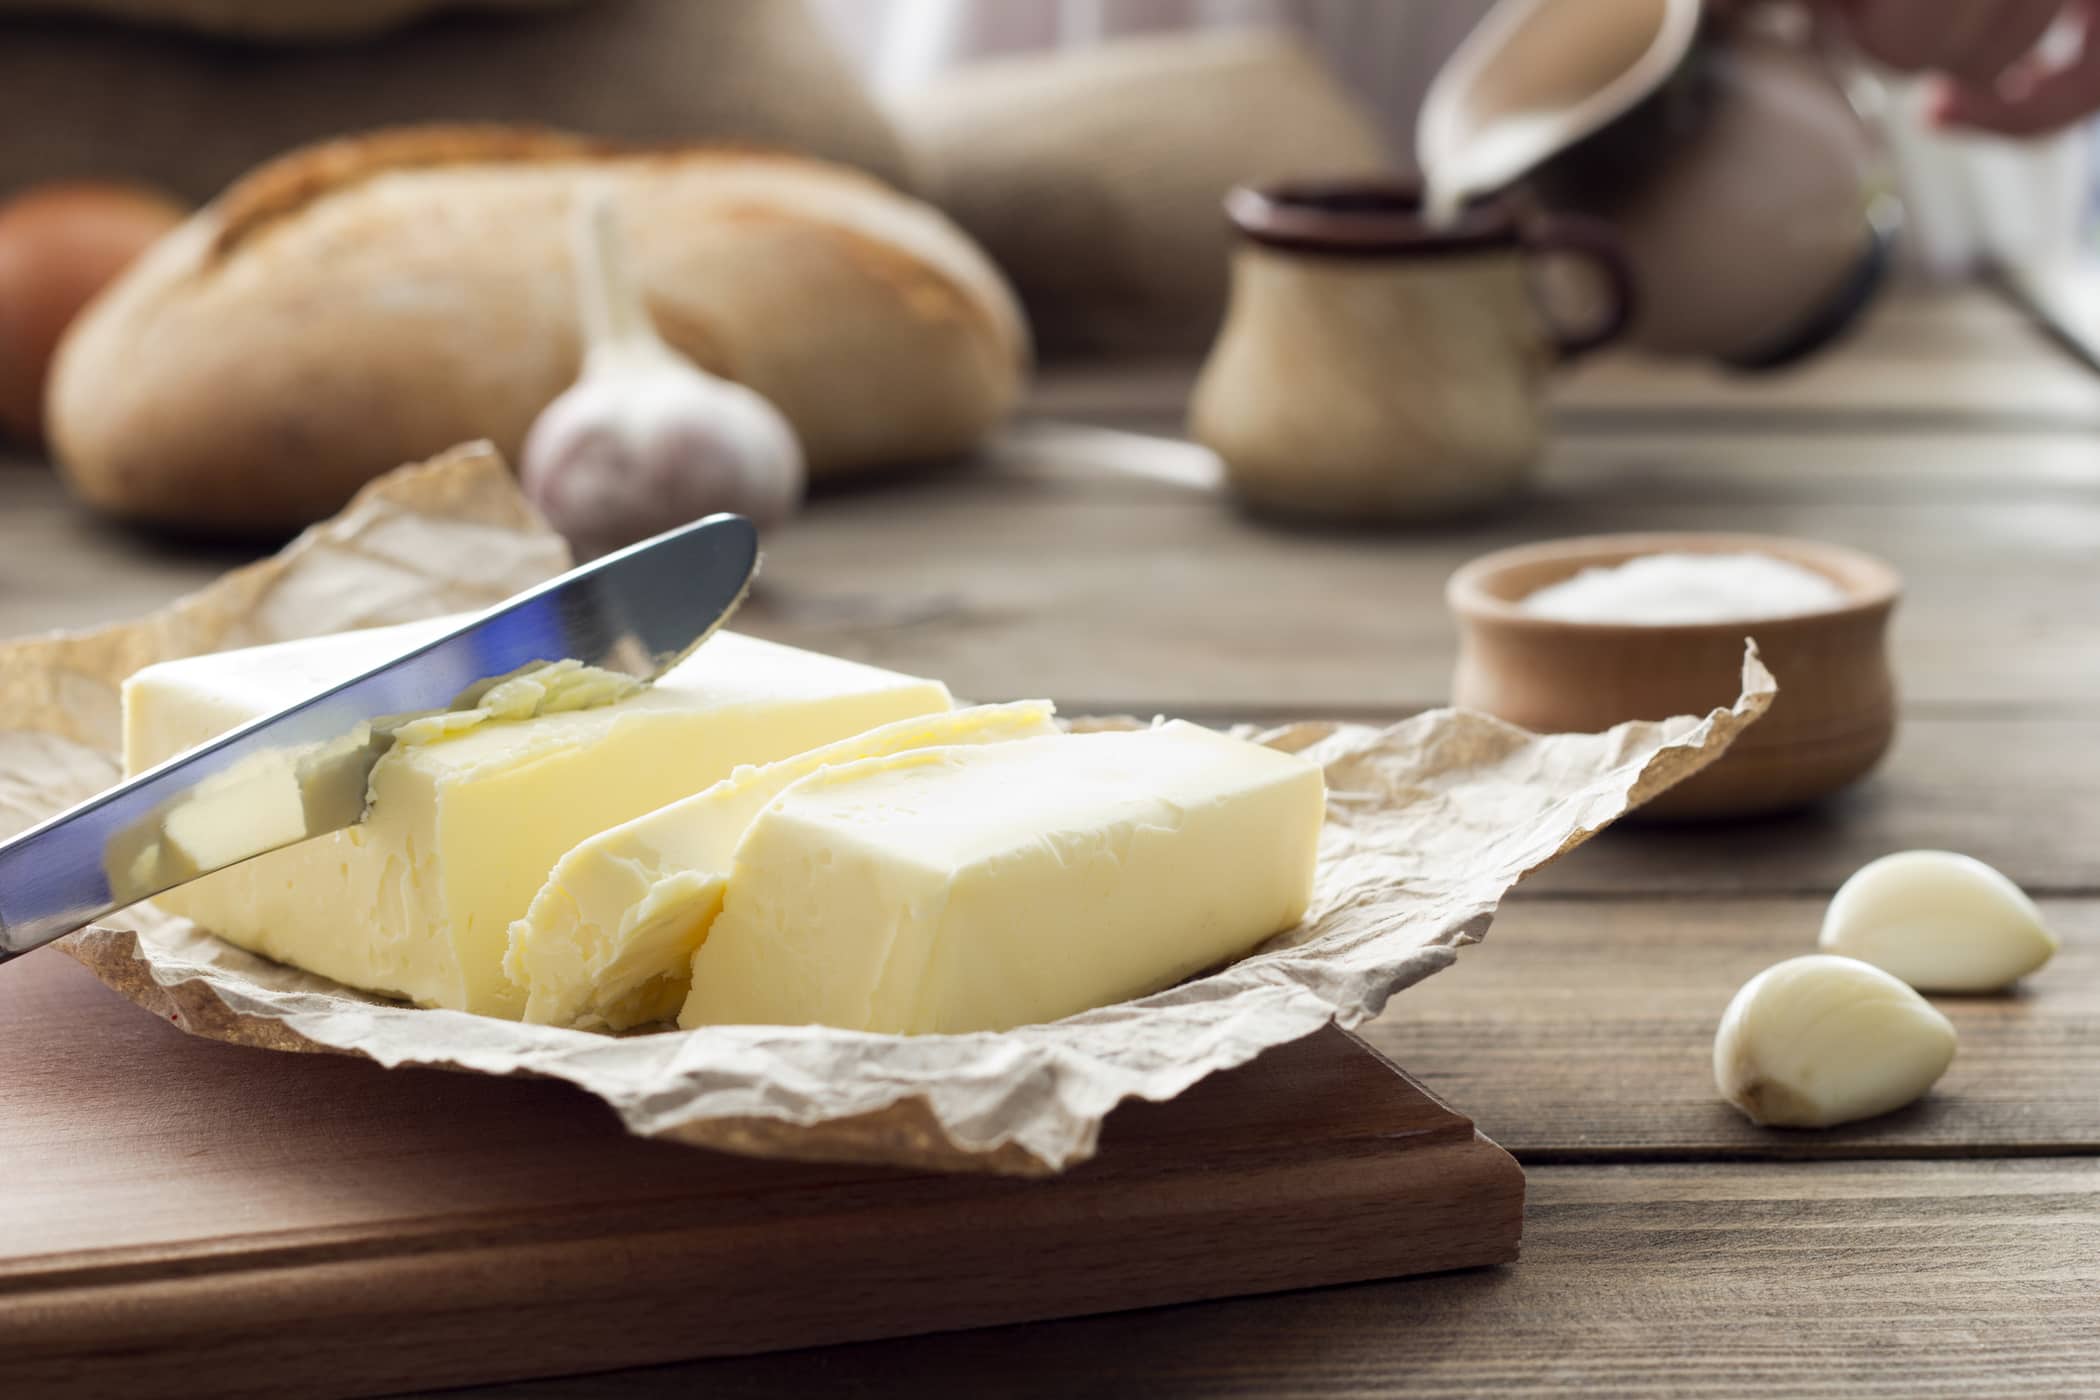 Was ist gesünder zwischen Butter und Margarine?